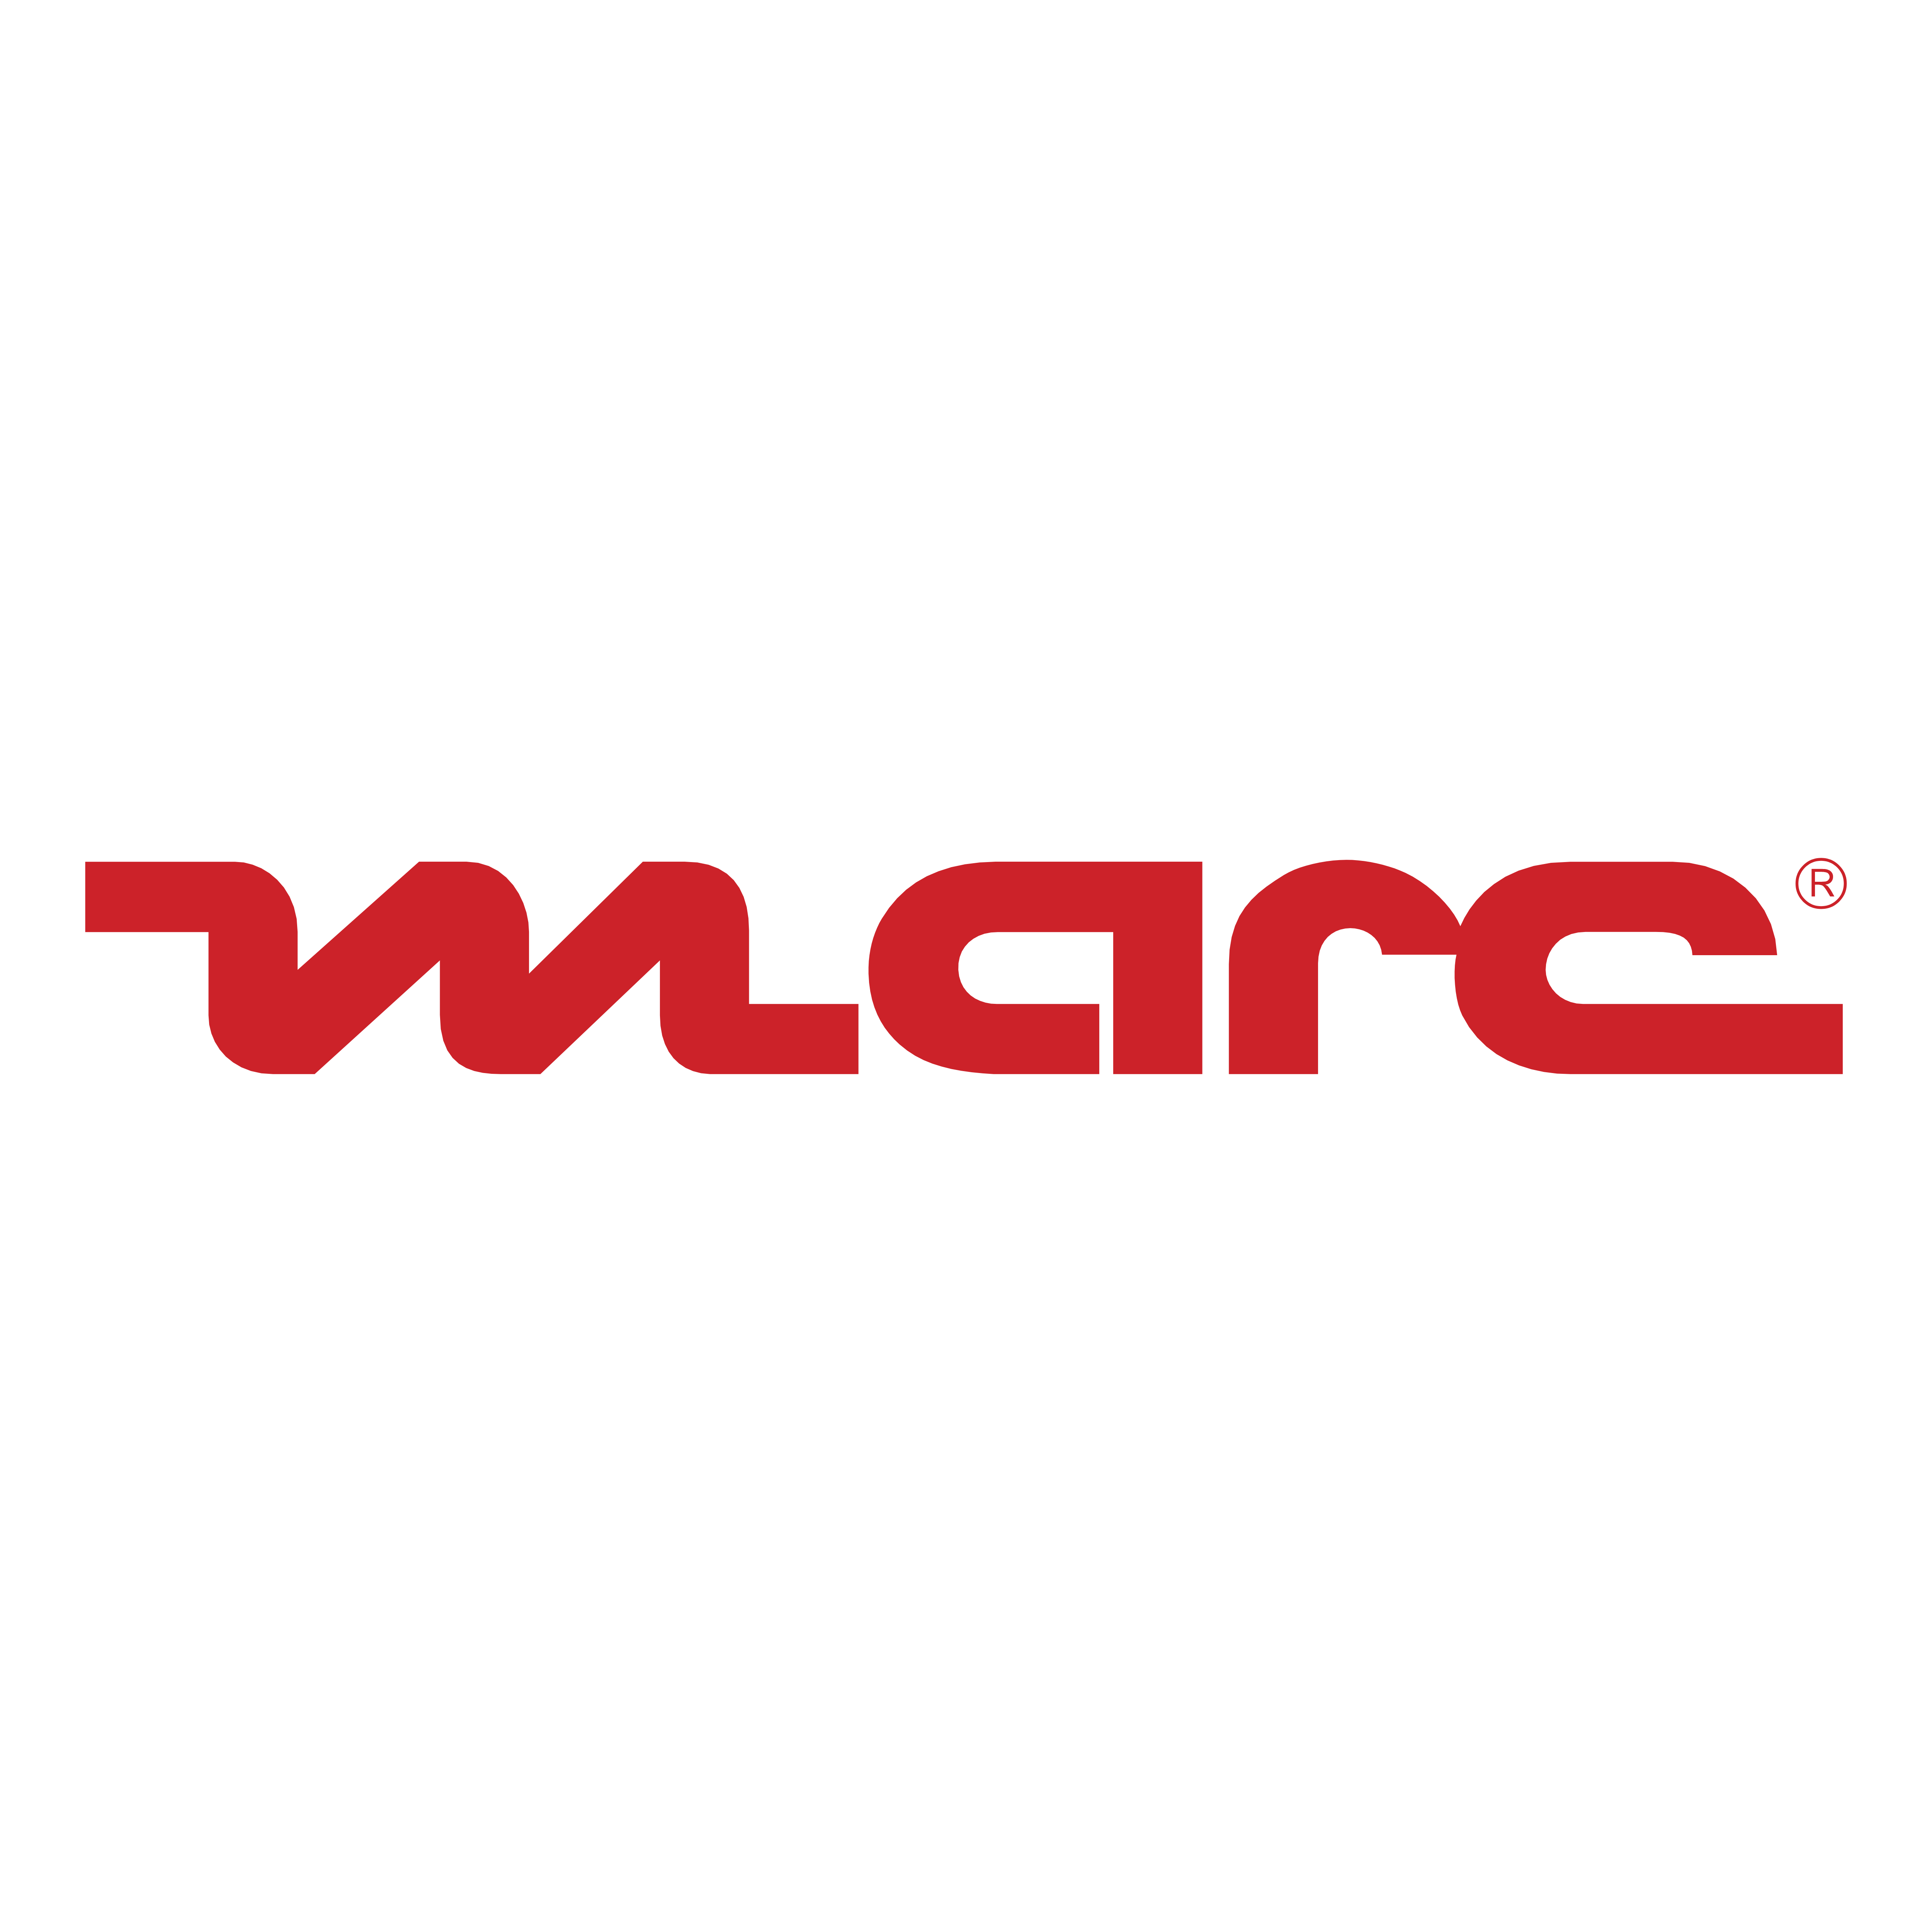 Marc Logo - Marc – Logos Download